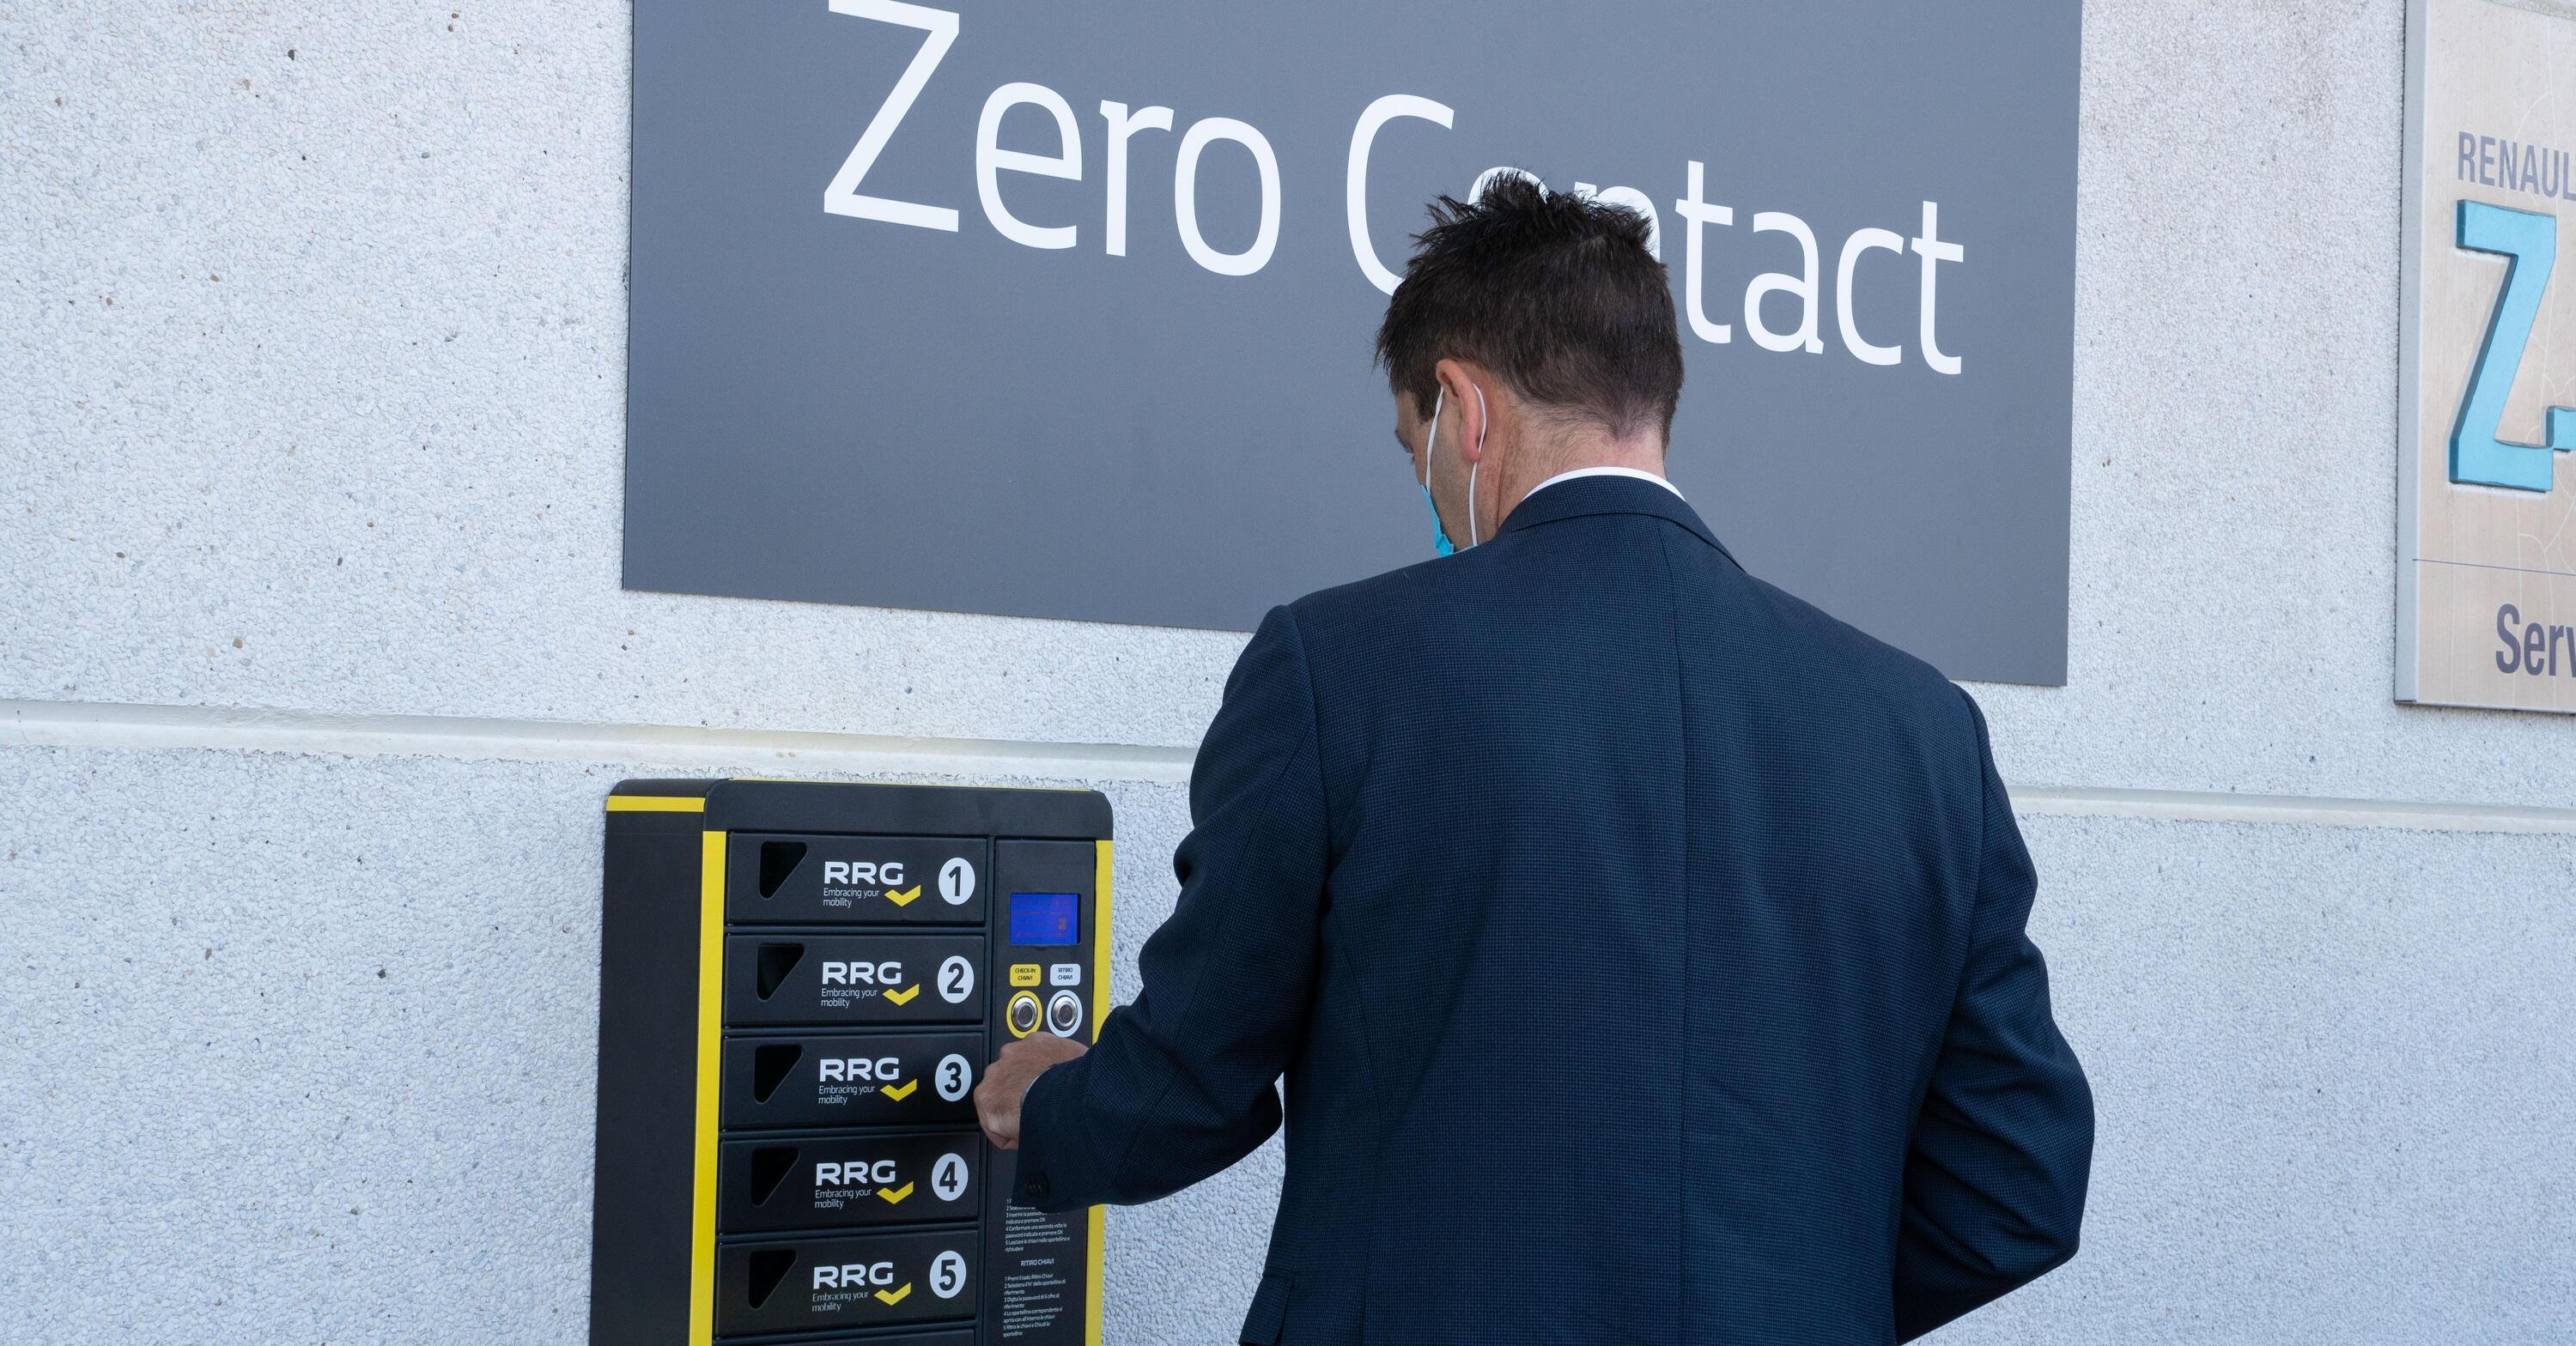 Renault digitalizza tutti i rapporti e i processi con la clientela: zero contatti (volendo) in concessionaria [App e Smart locker]